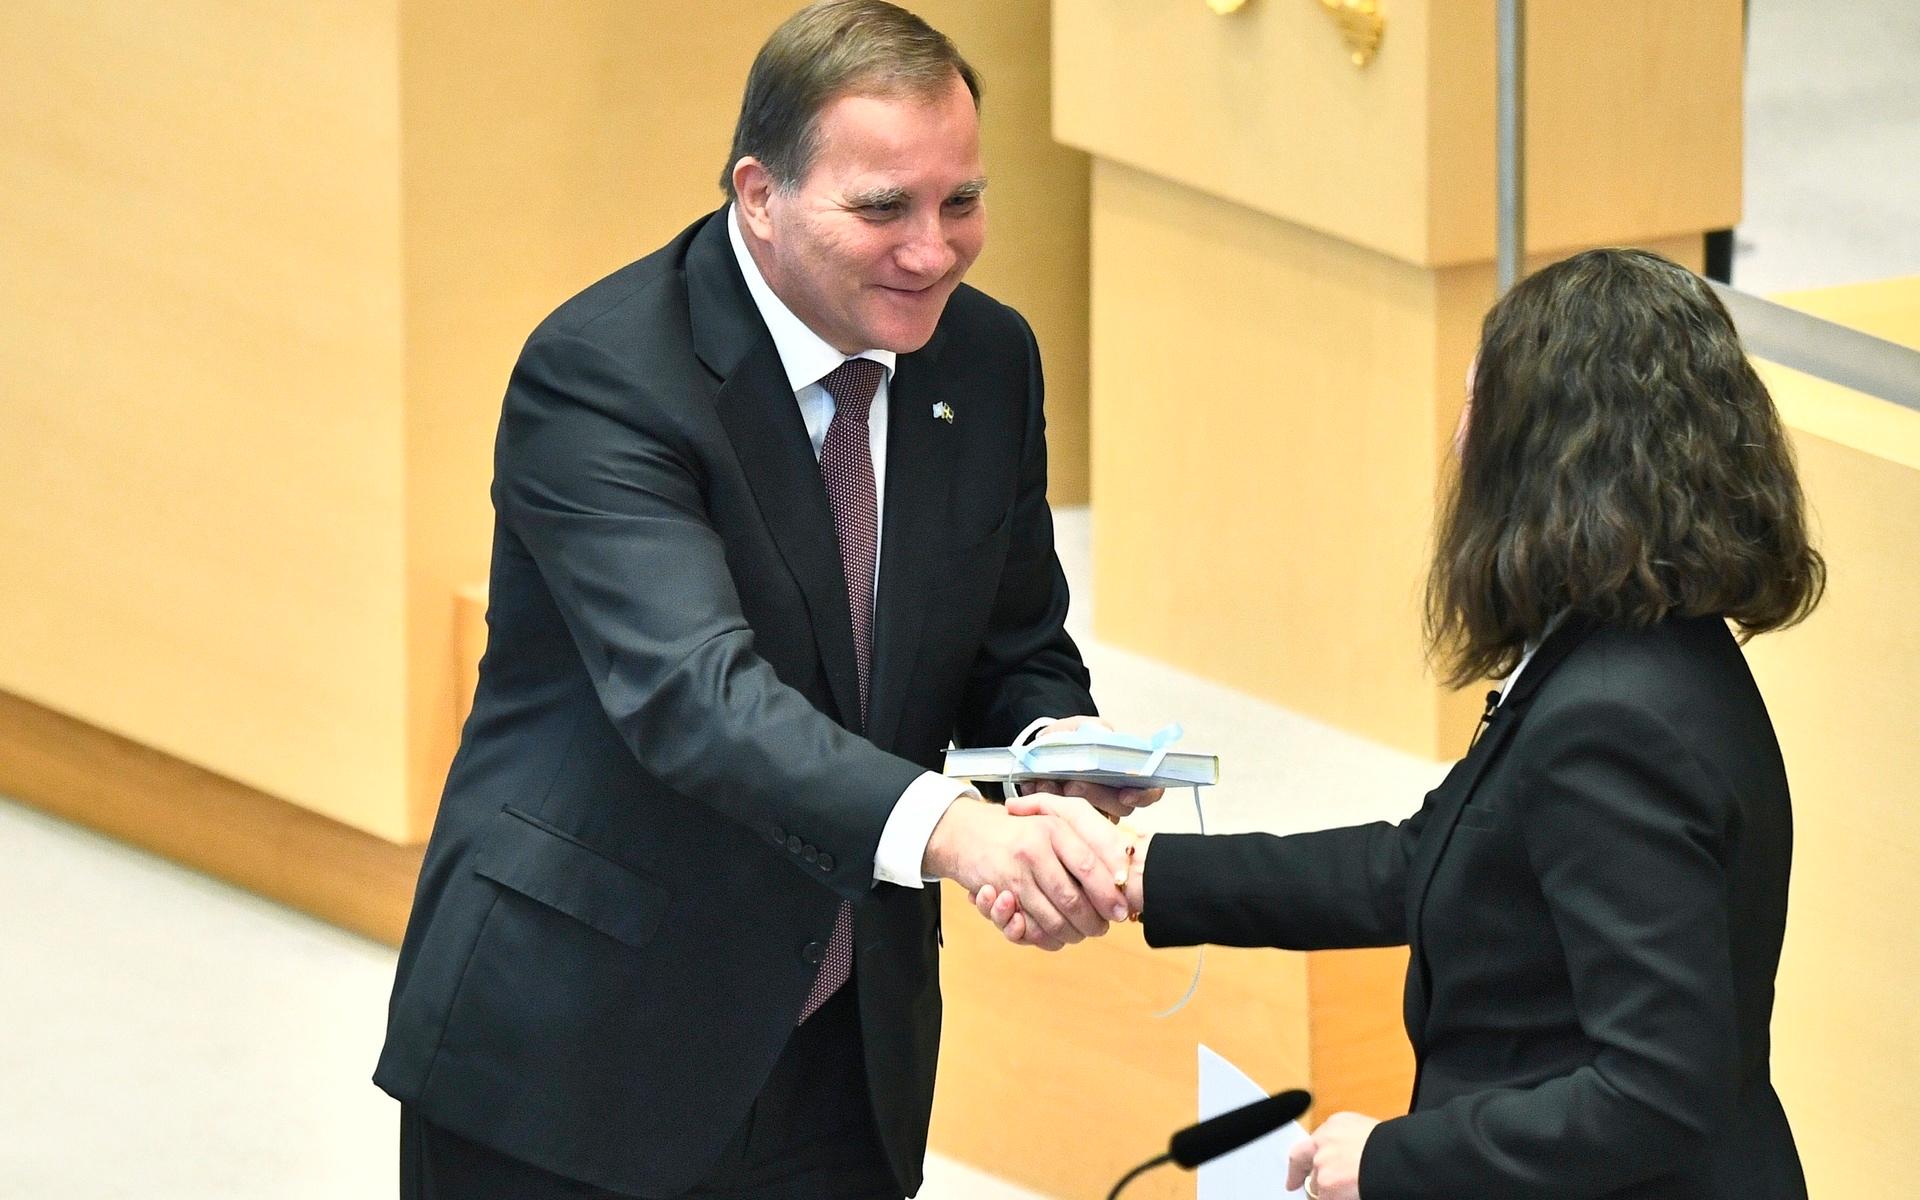 Regeringskollegan Märta Stenevi (MP) gav Löfven ett interrailkort, och en inbjudan till Malmö för att äta spättekaka.